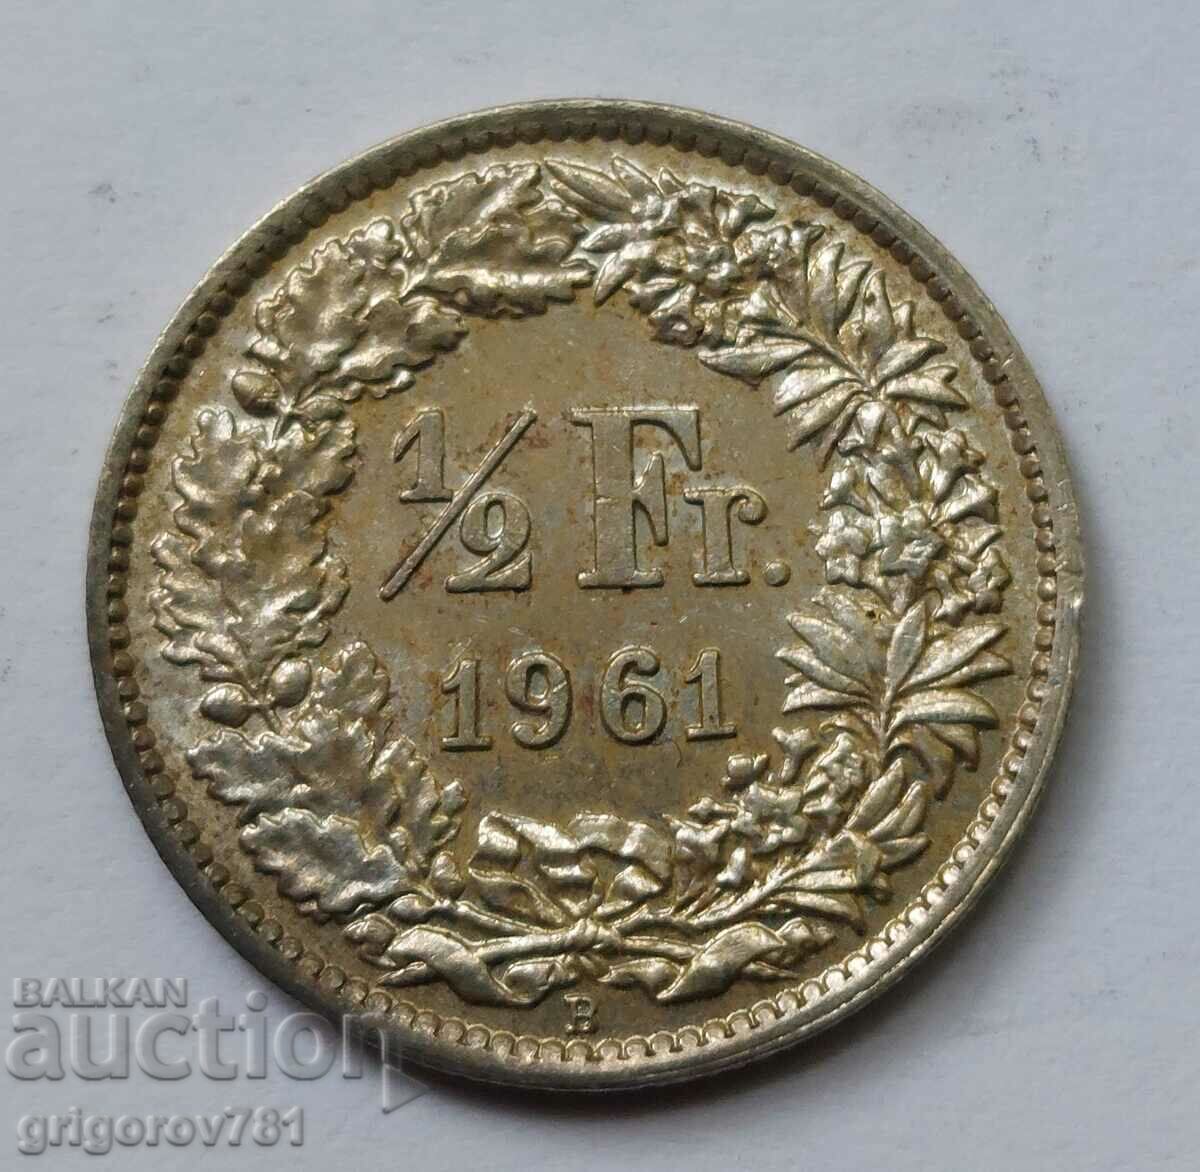 Ασημένιο φράγκο 1/2 Ελβετία 1961 Β - Ασημένιο νόμισμα #6